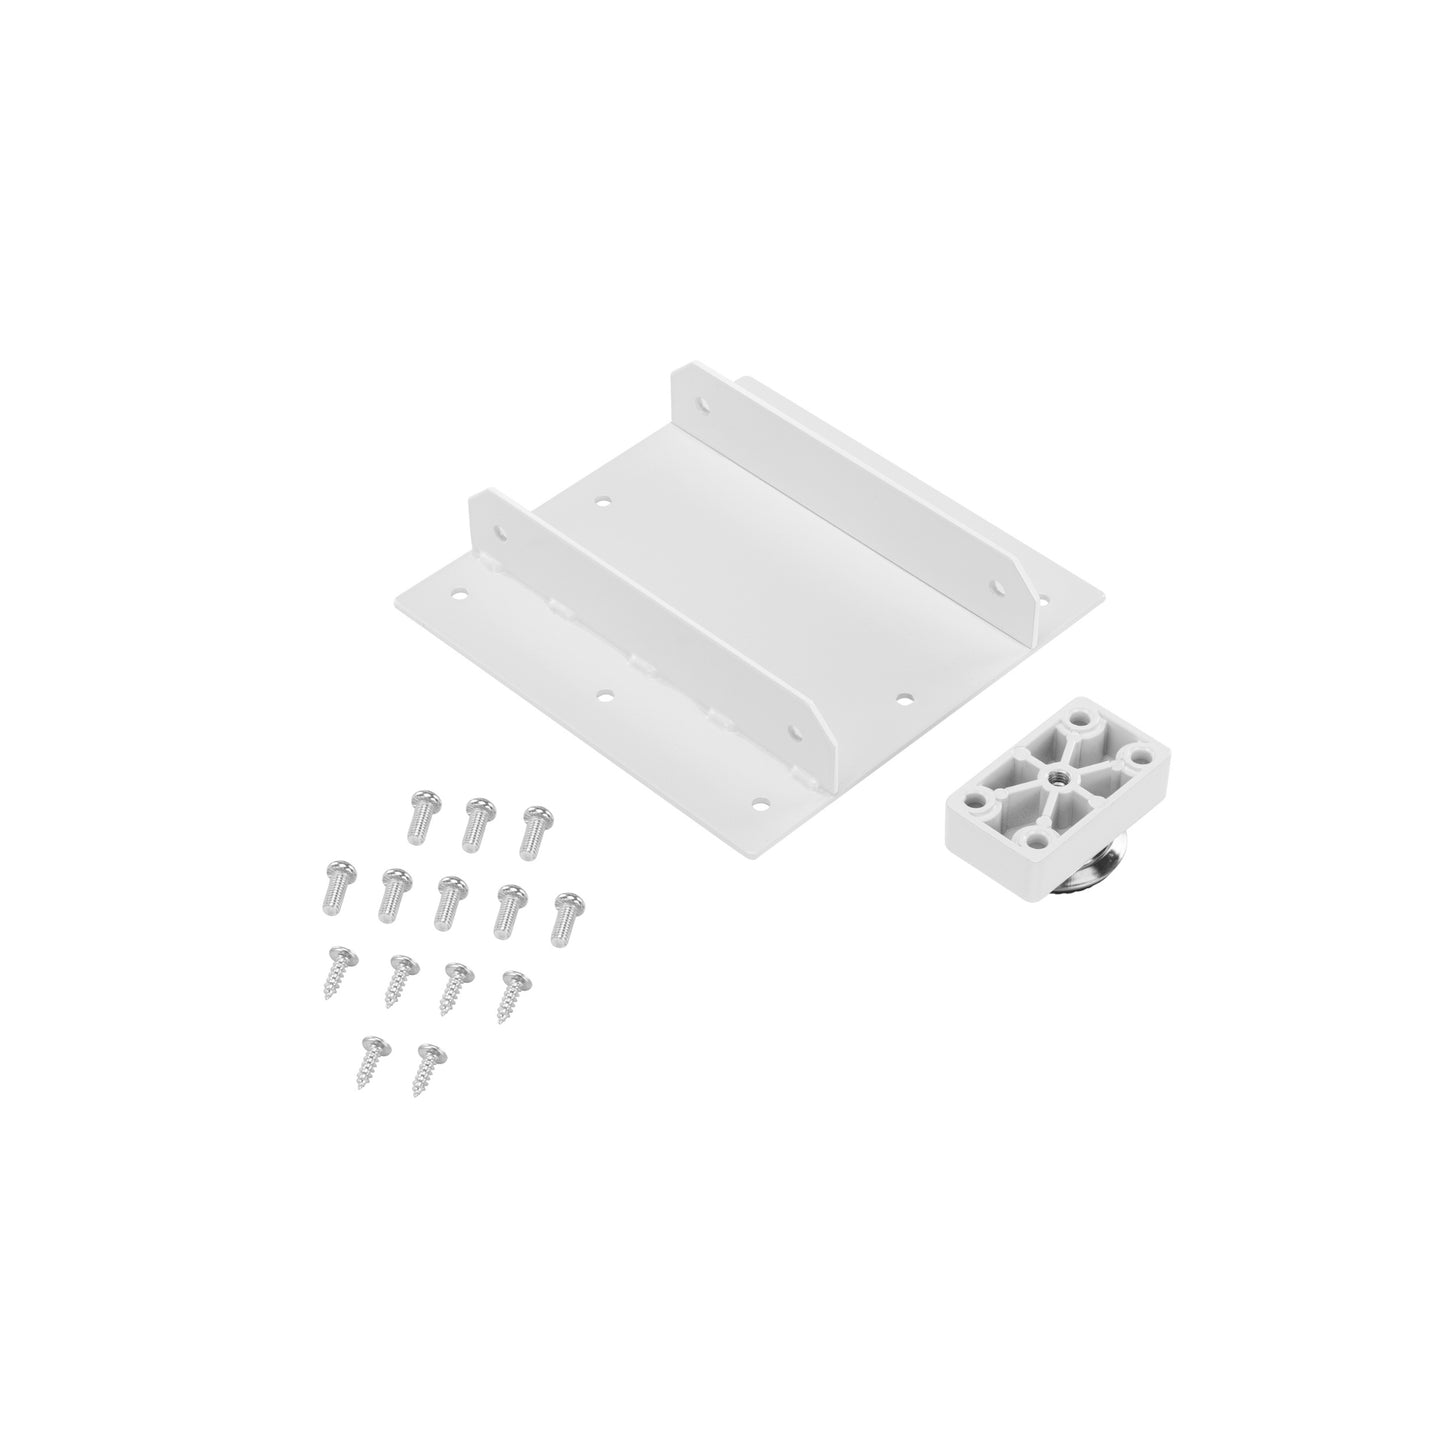 Bracket Kit for LG-02 White 3